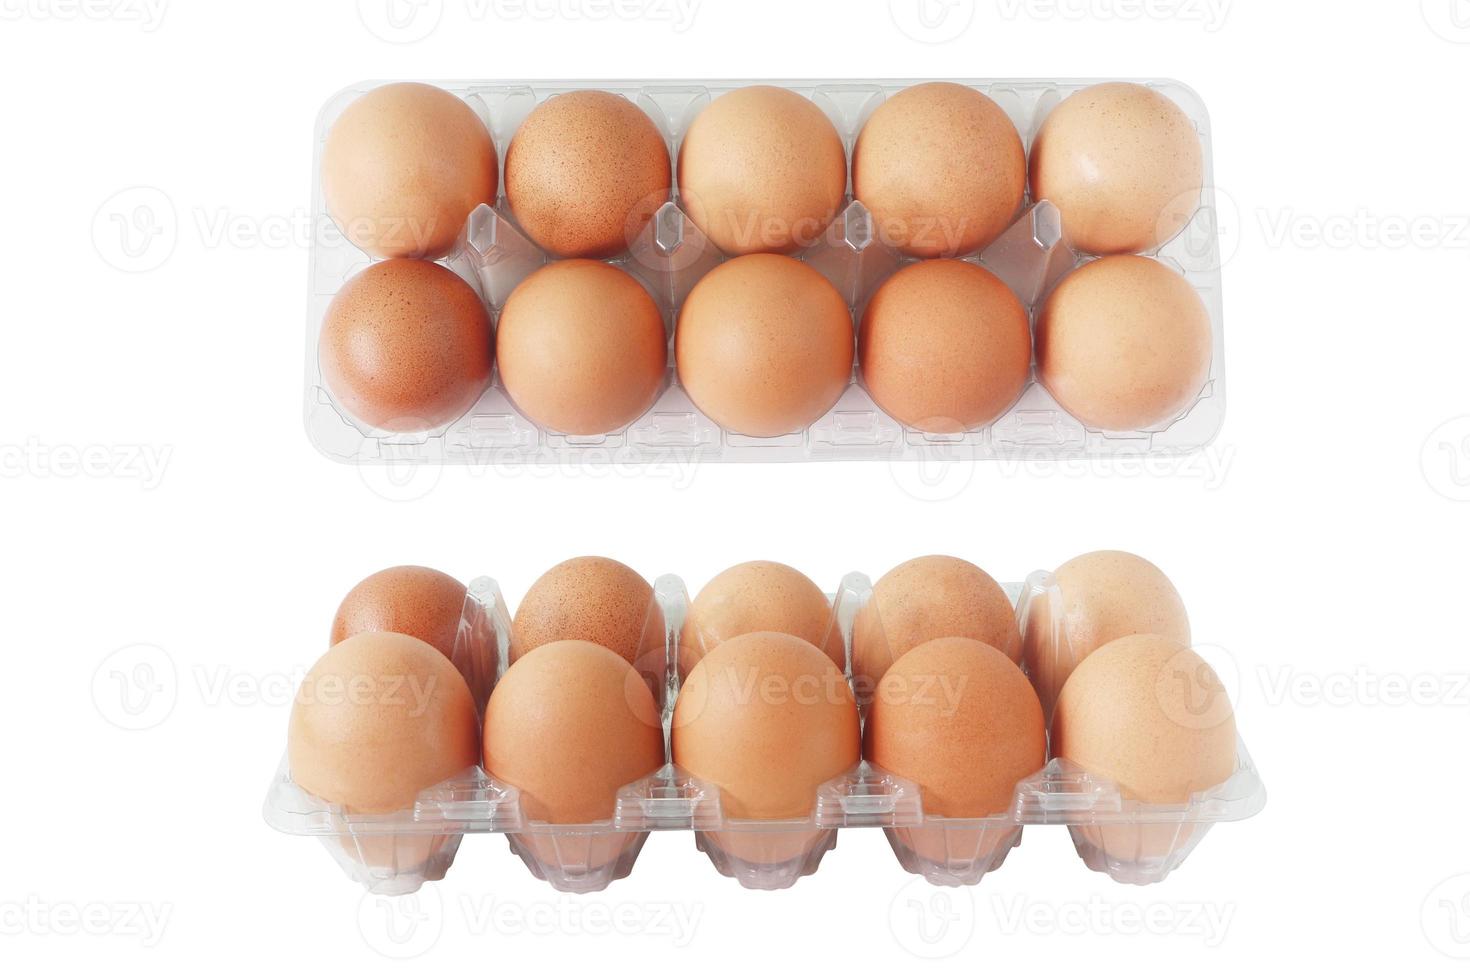 ägg av kyckling i plastbricka isolerad på vit bakgrund. ovanifrån och från sidan. foto